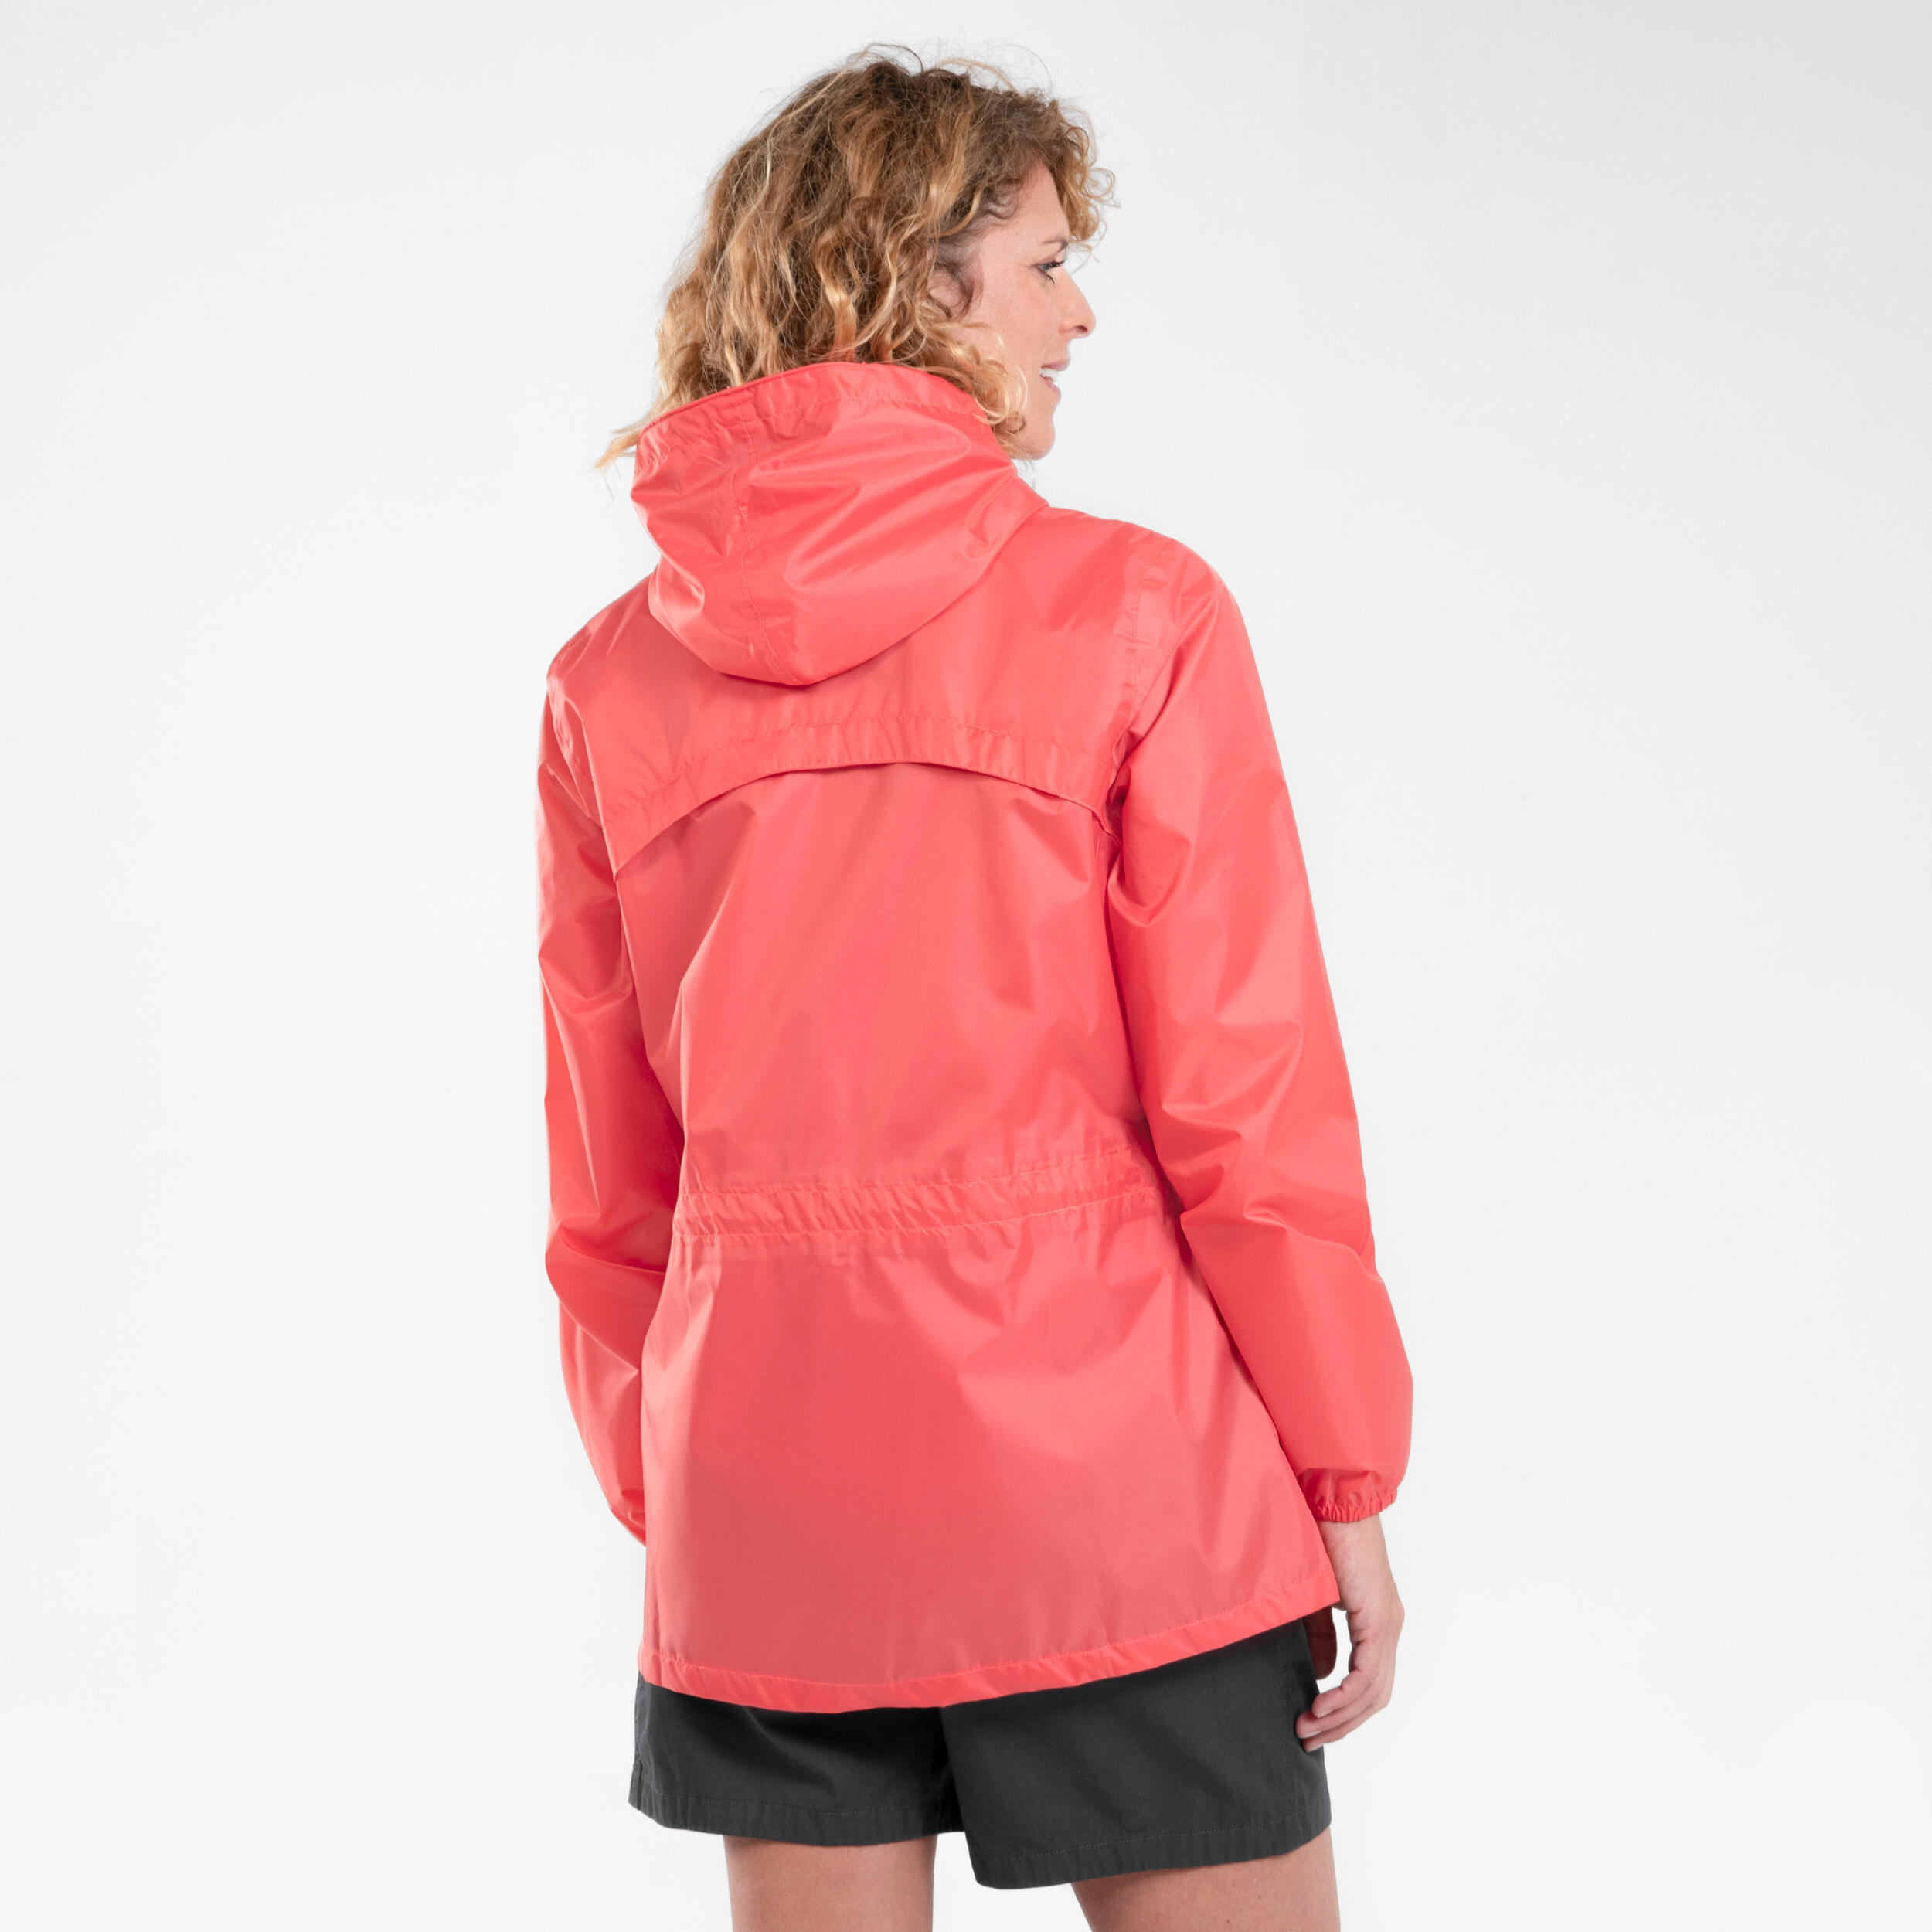 Women's Windproof and Water-repellent Hiking Jacket - Raincut Full Zip 4/7